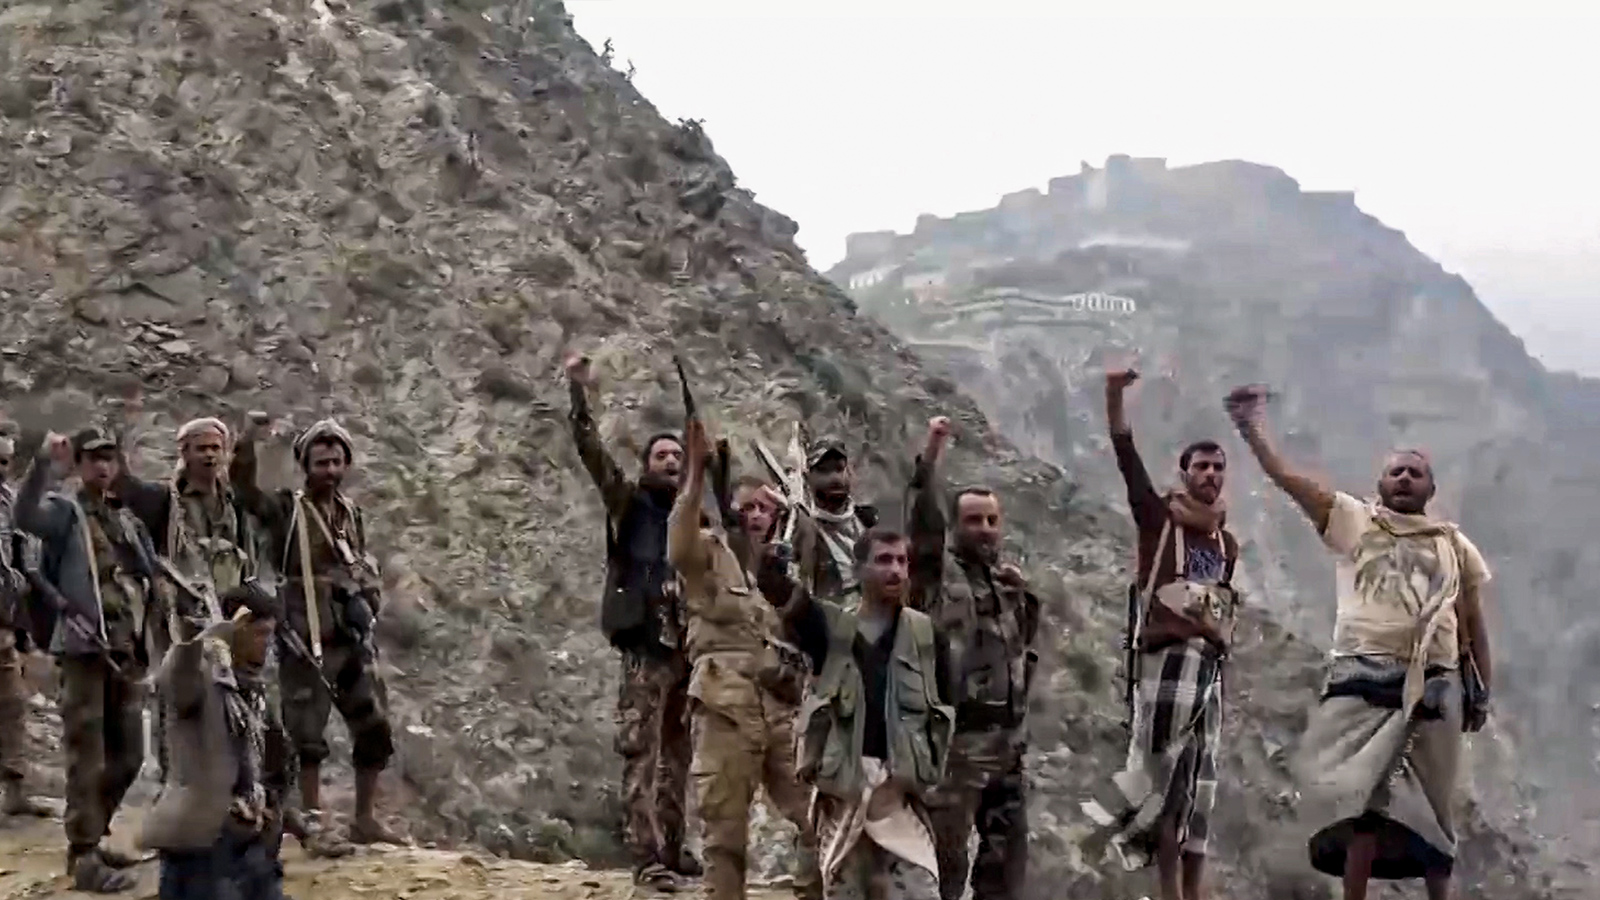 الحرب التي يخوضها الحوثيون أصبحت في الآونة الأخيرة ساحة للتنافس الإيراني السعودي، وباتت سببا إضافيا لتعميق التدخل العسكري الأميركي